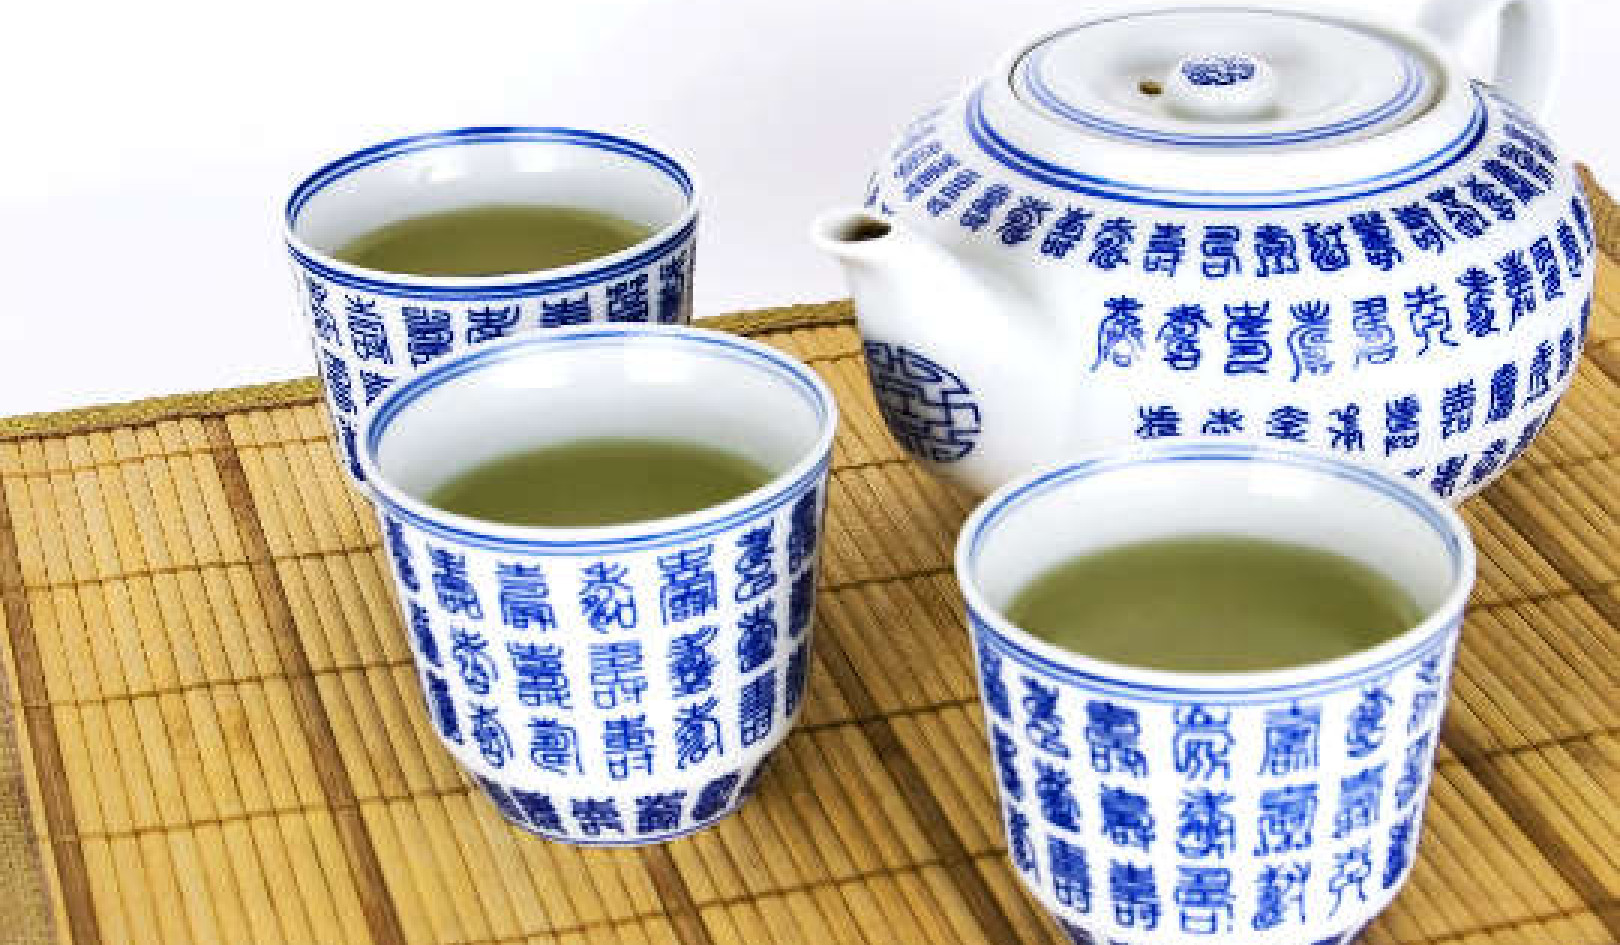 Μπορεί το πράσινο τσάι να είναι επιβλαβές για την υγεία σας;